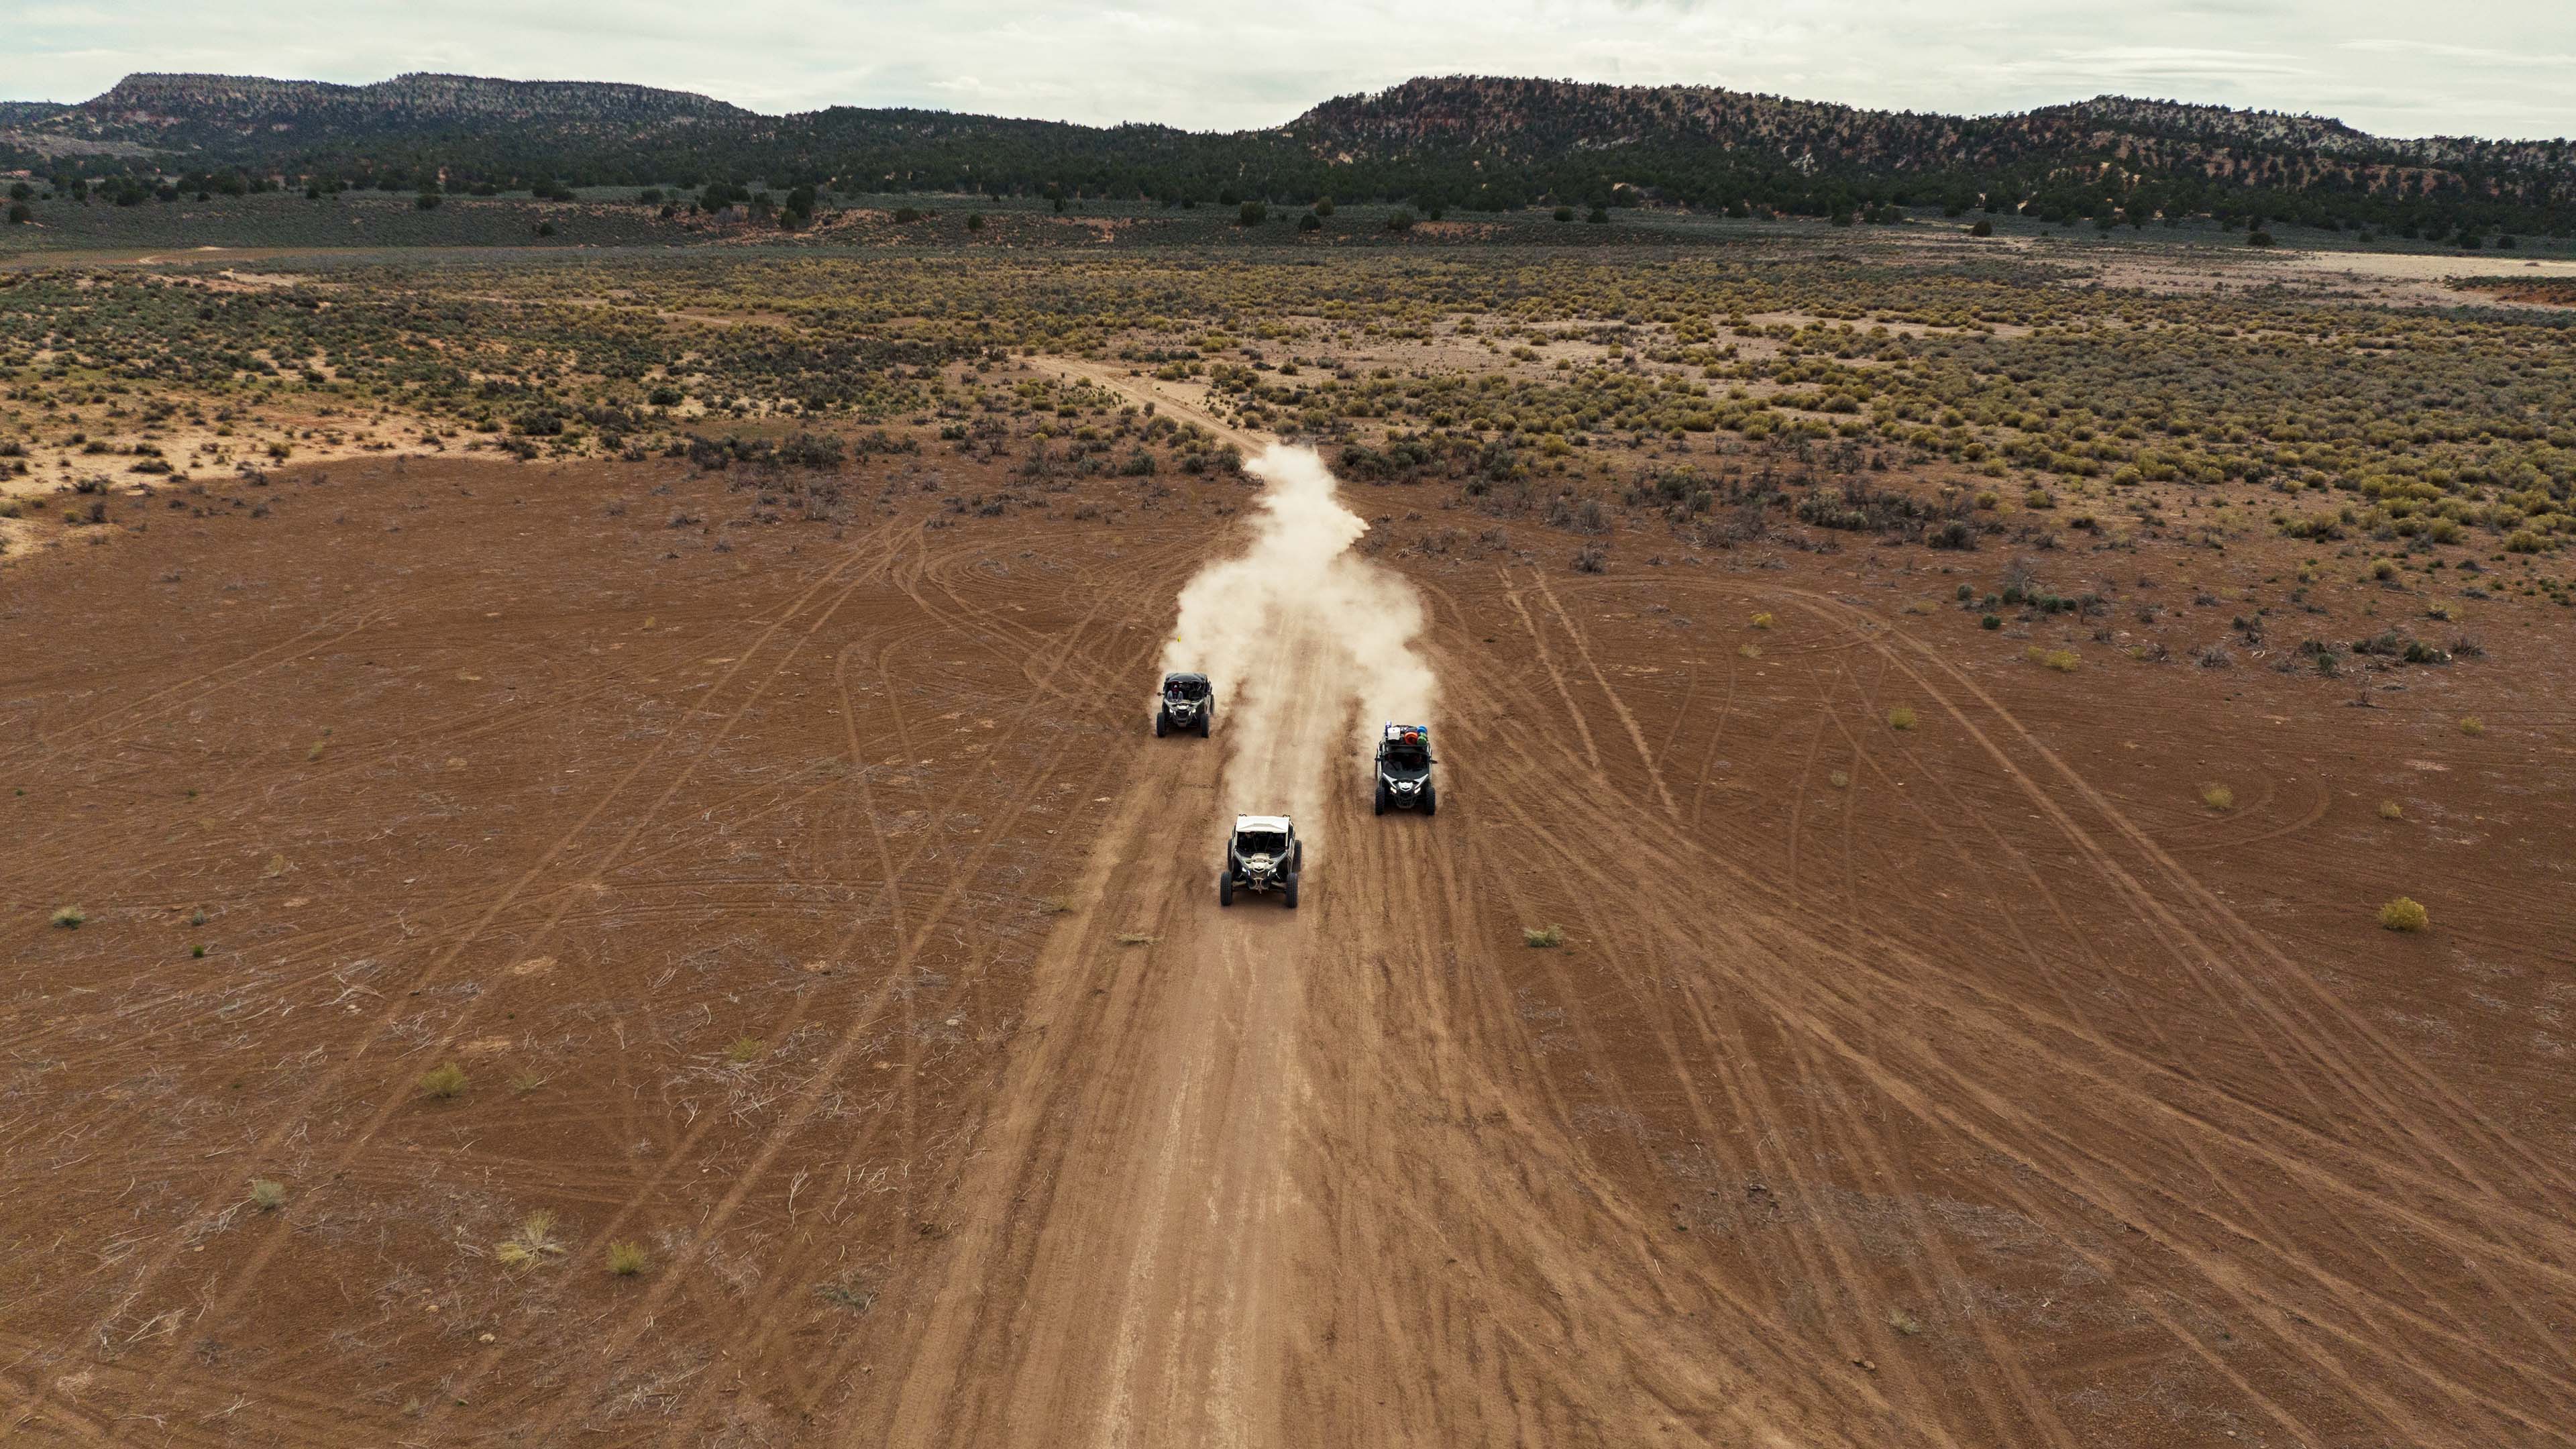  Trois véhicules Can-Am Off-Road coursant sur un chemin de terre